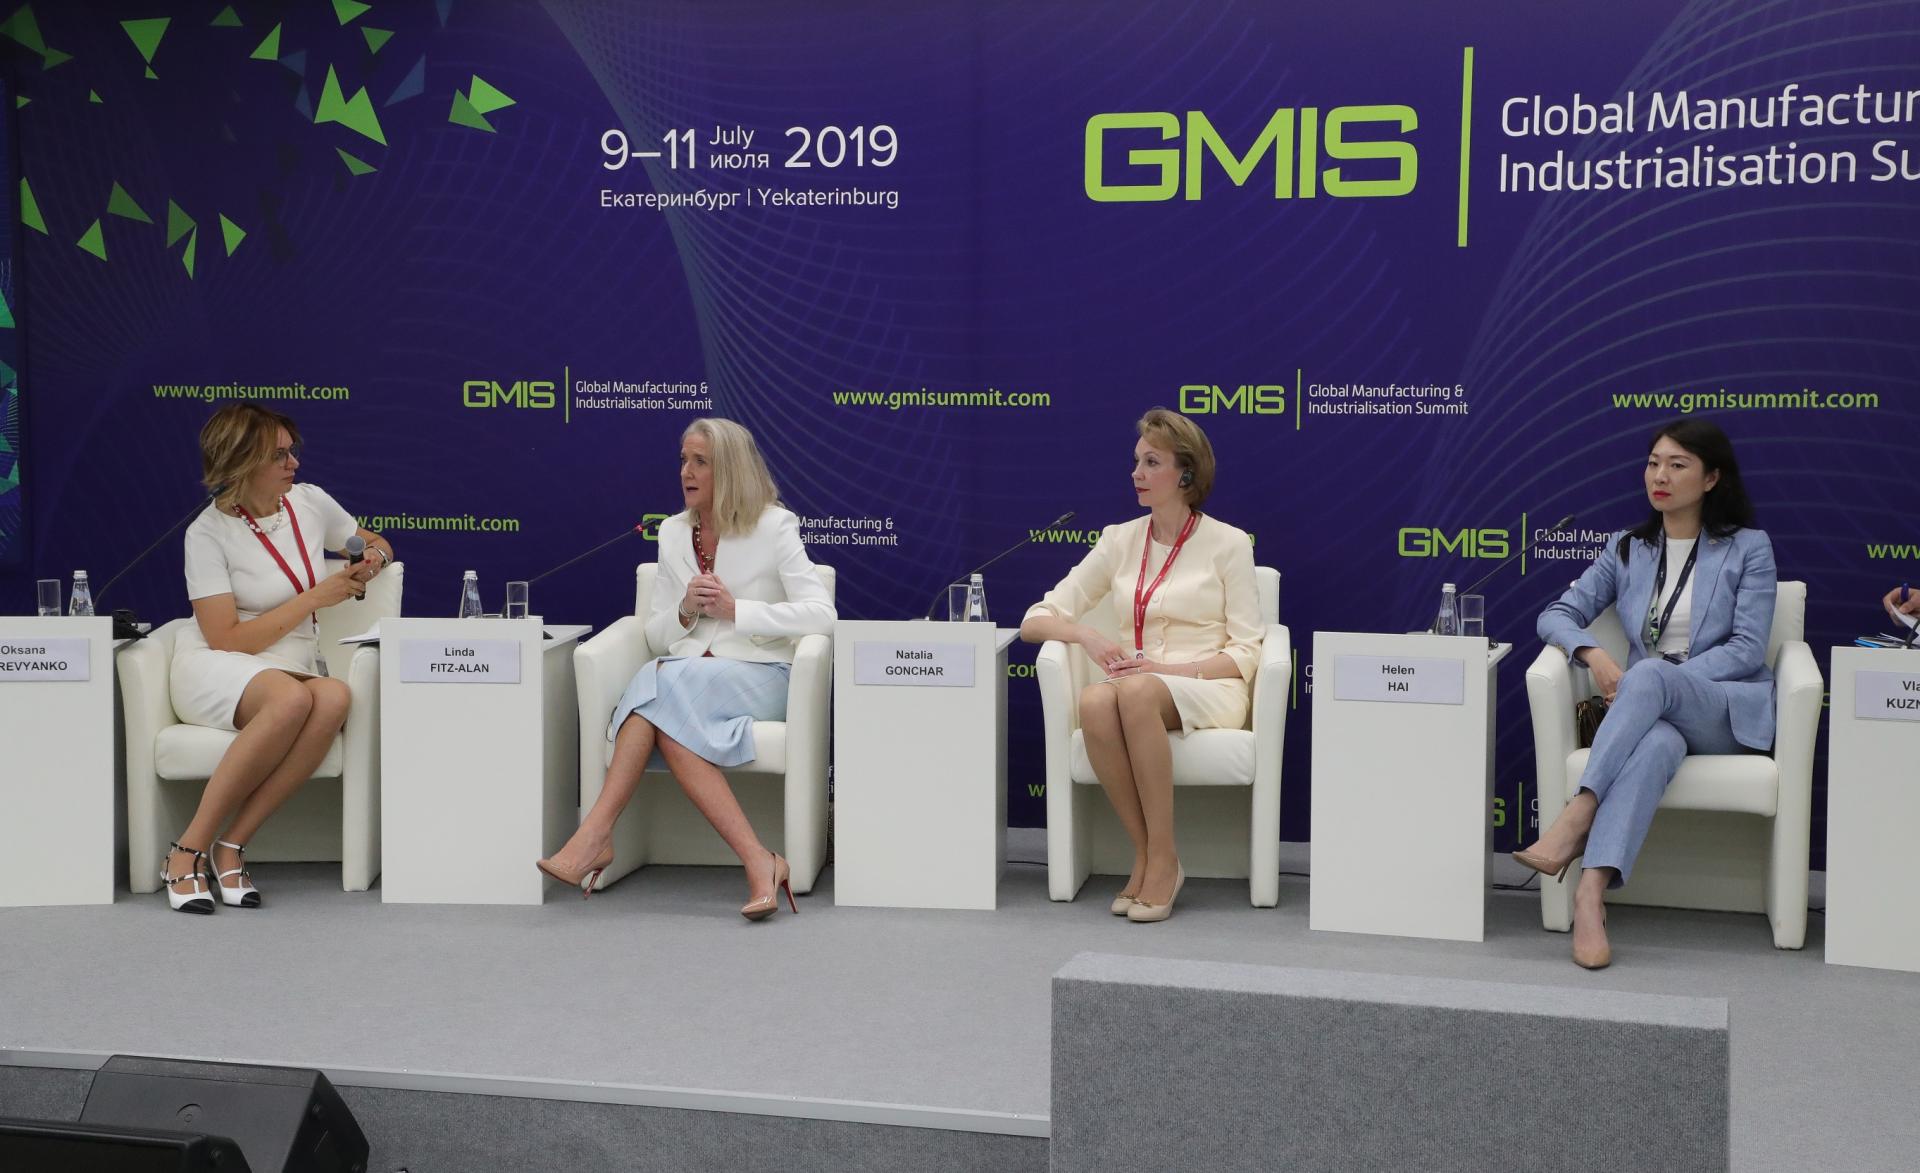 РМК представила подходы к реализации программ устойчивого развития на GMIS